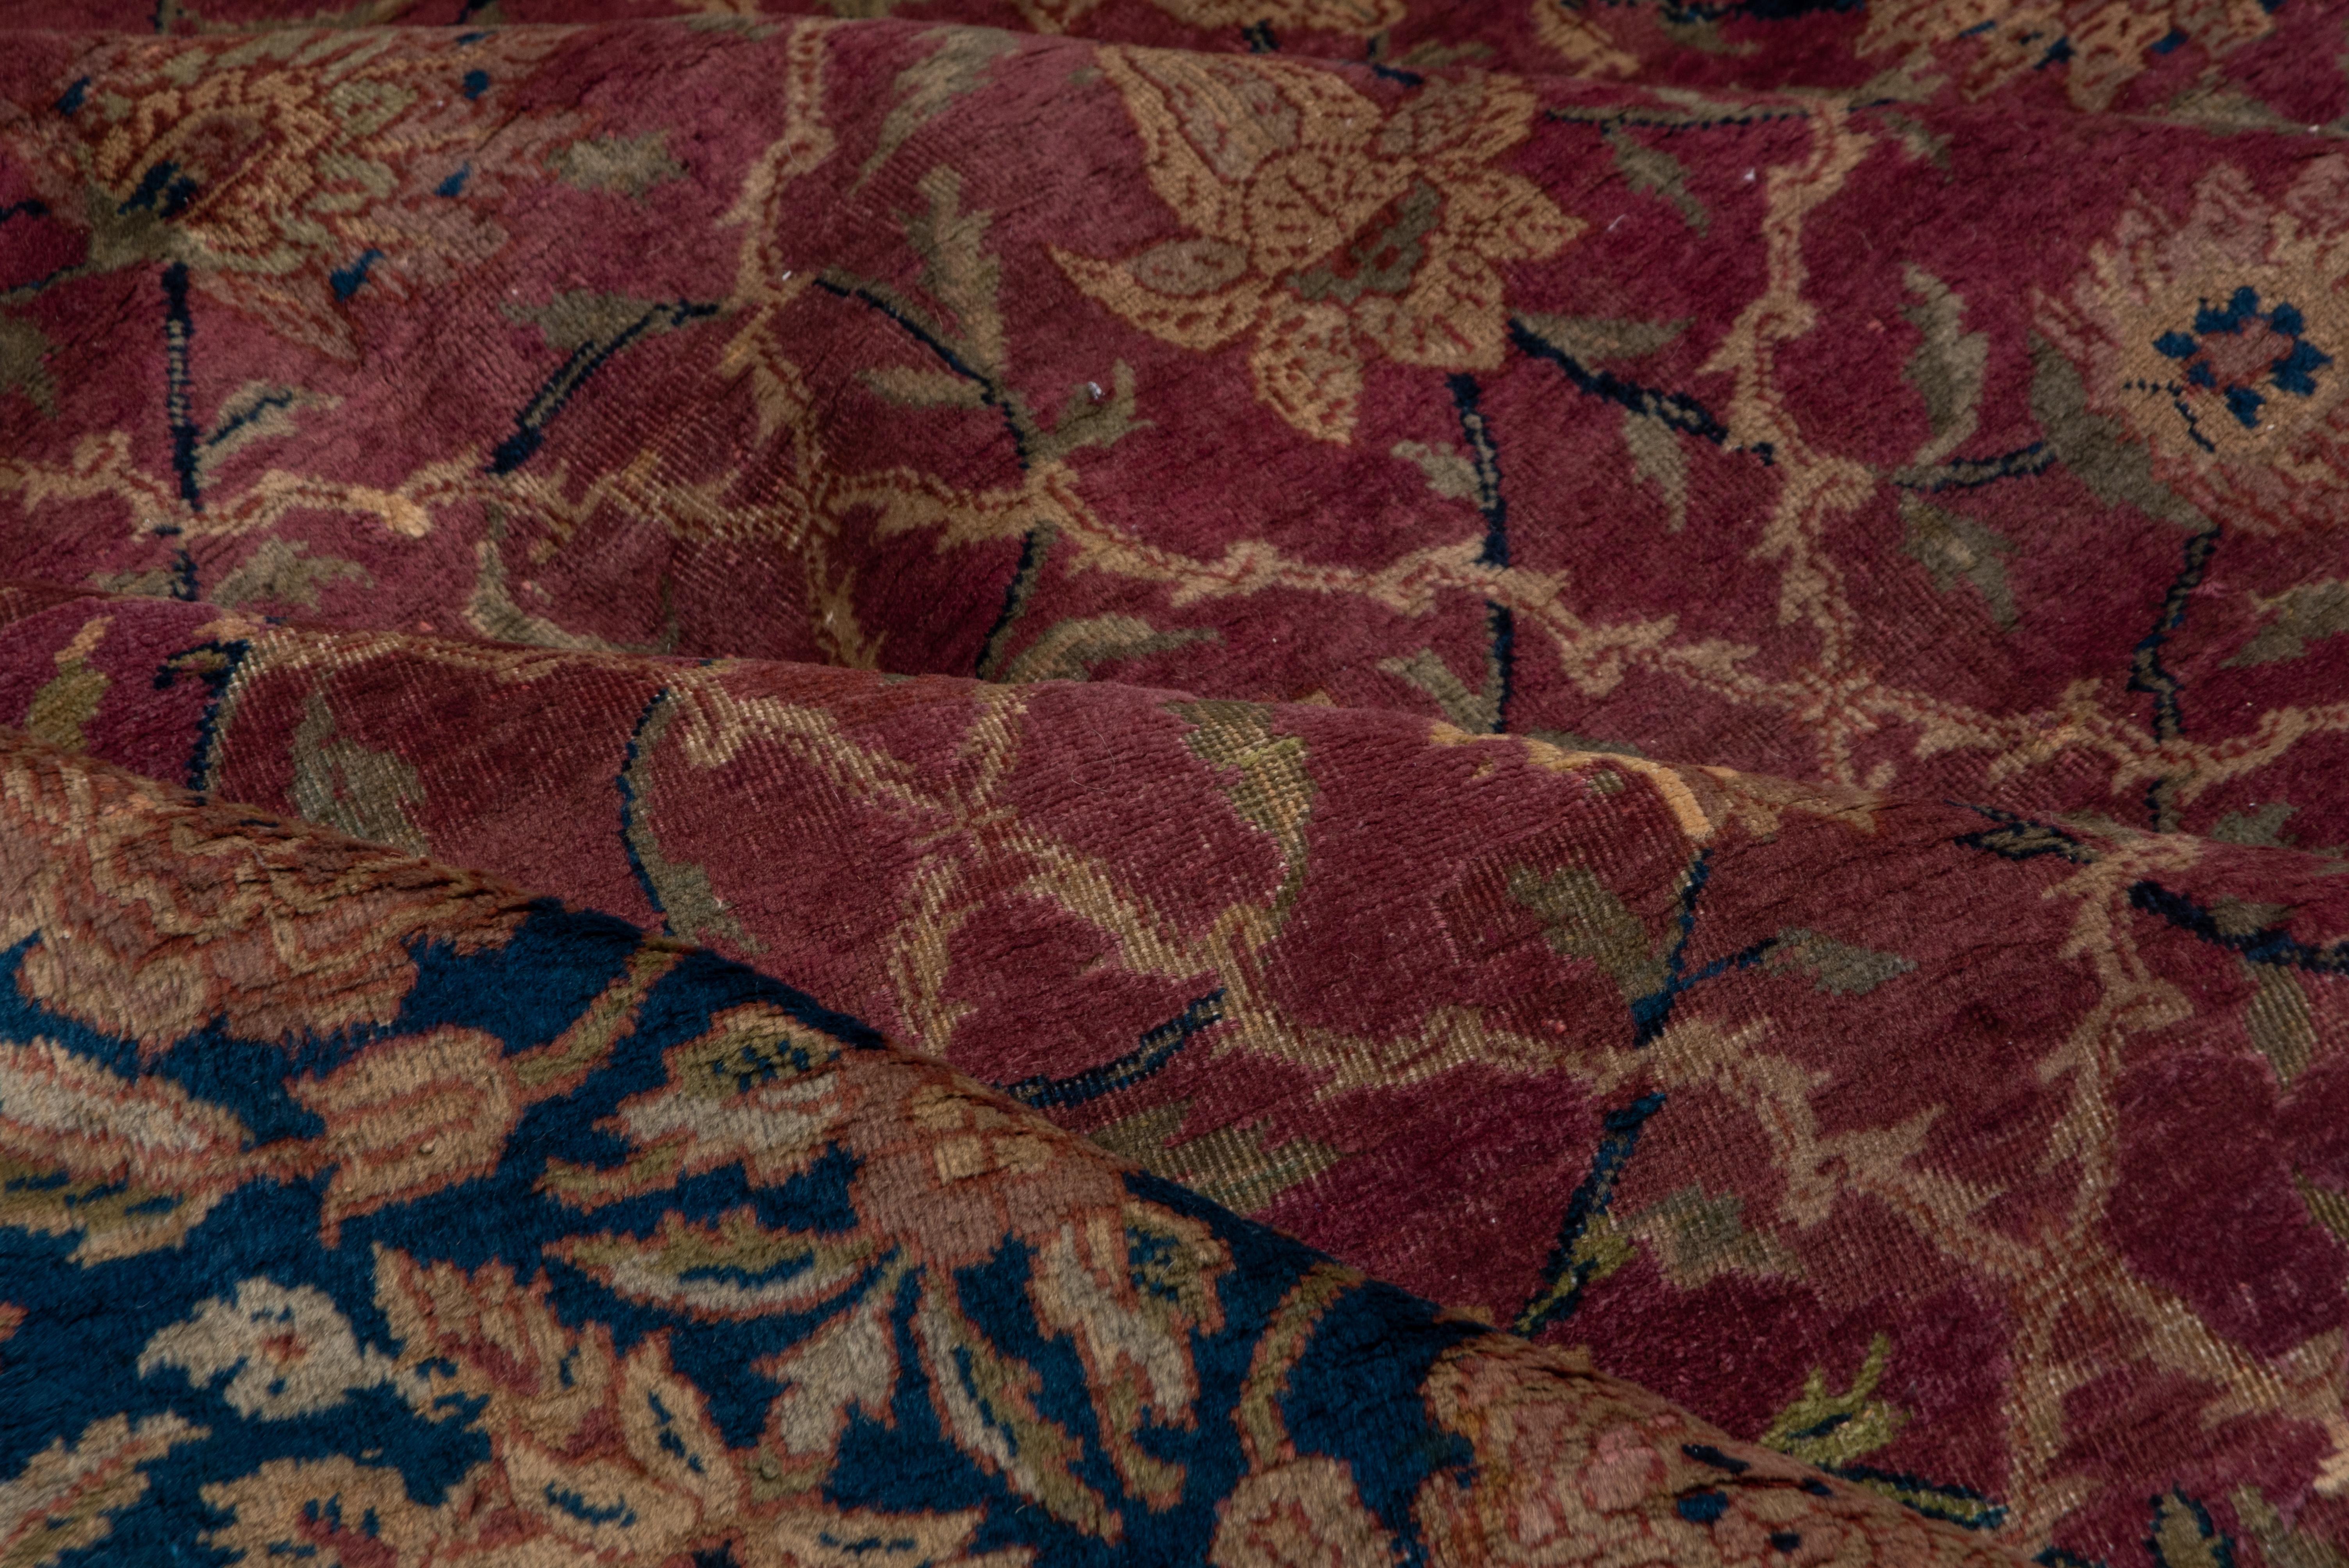 Ce tapis de ville du nord de l'Inde suit de près le modèle et la palette des tapis de pashmina du Cachemire du XVIIe siècle, avec un fond bordeaux prune proprement divisé par un treillis moghol ivoire renfermant des rosettes. Bordure principale à